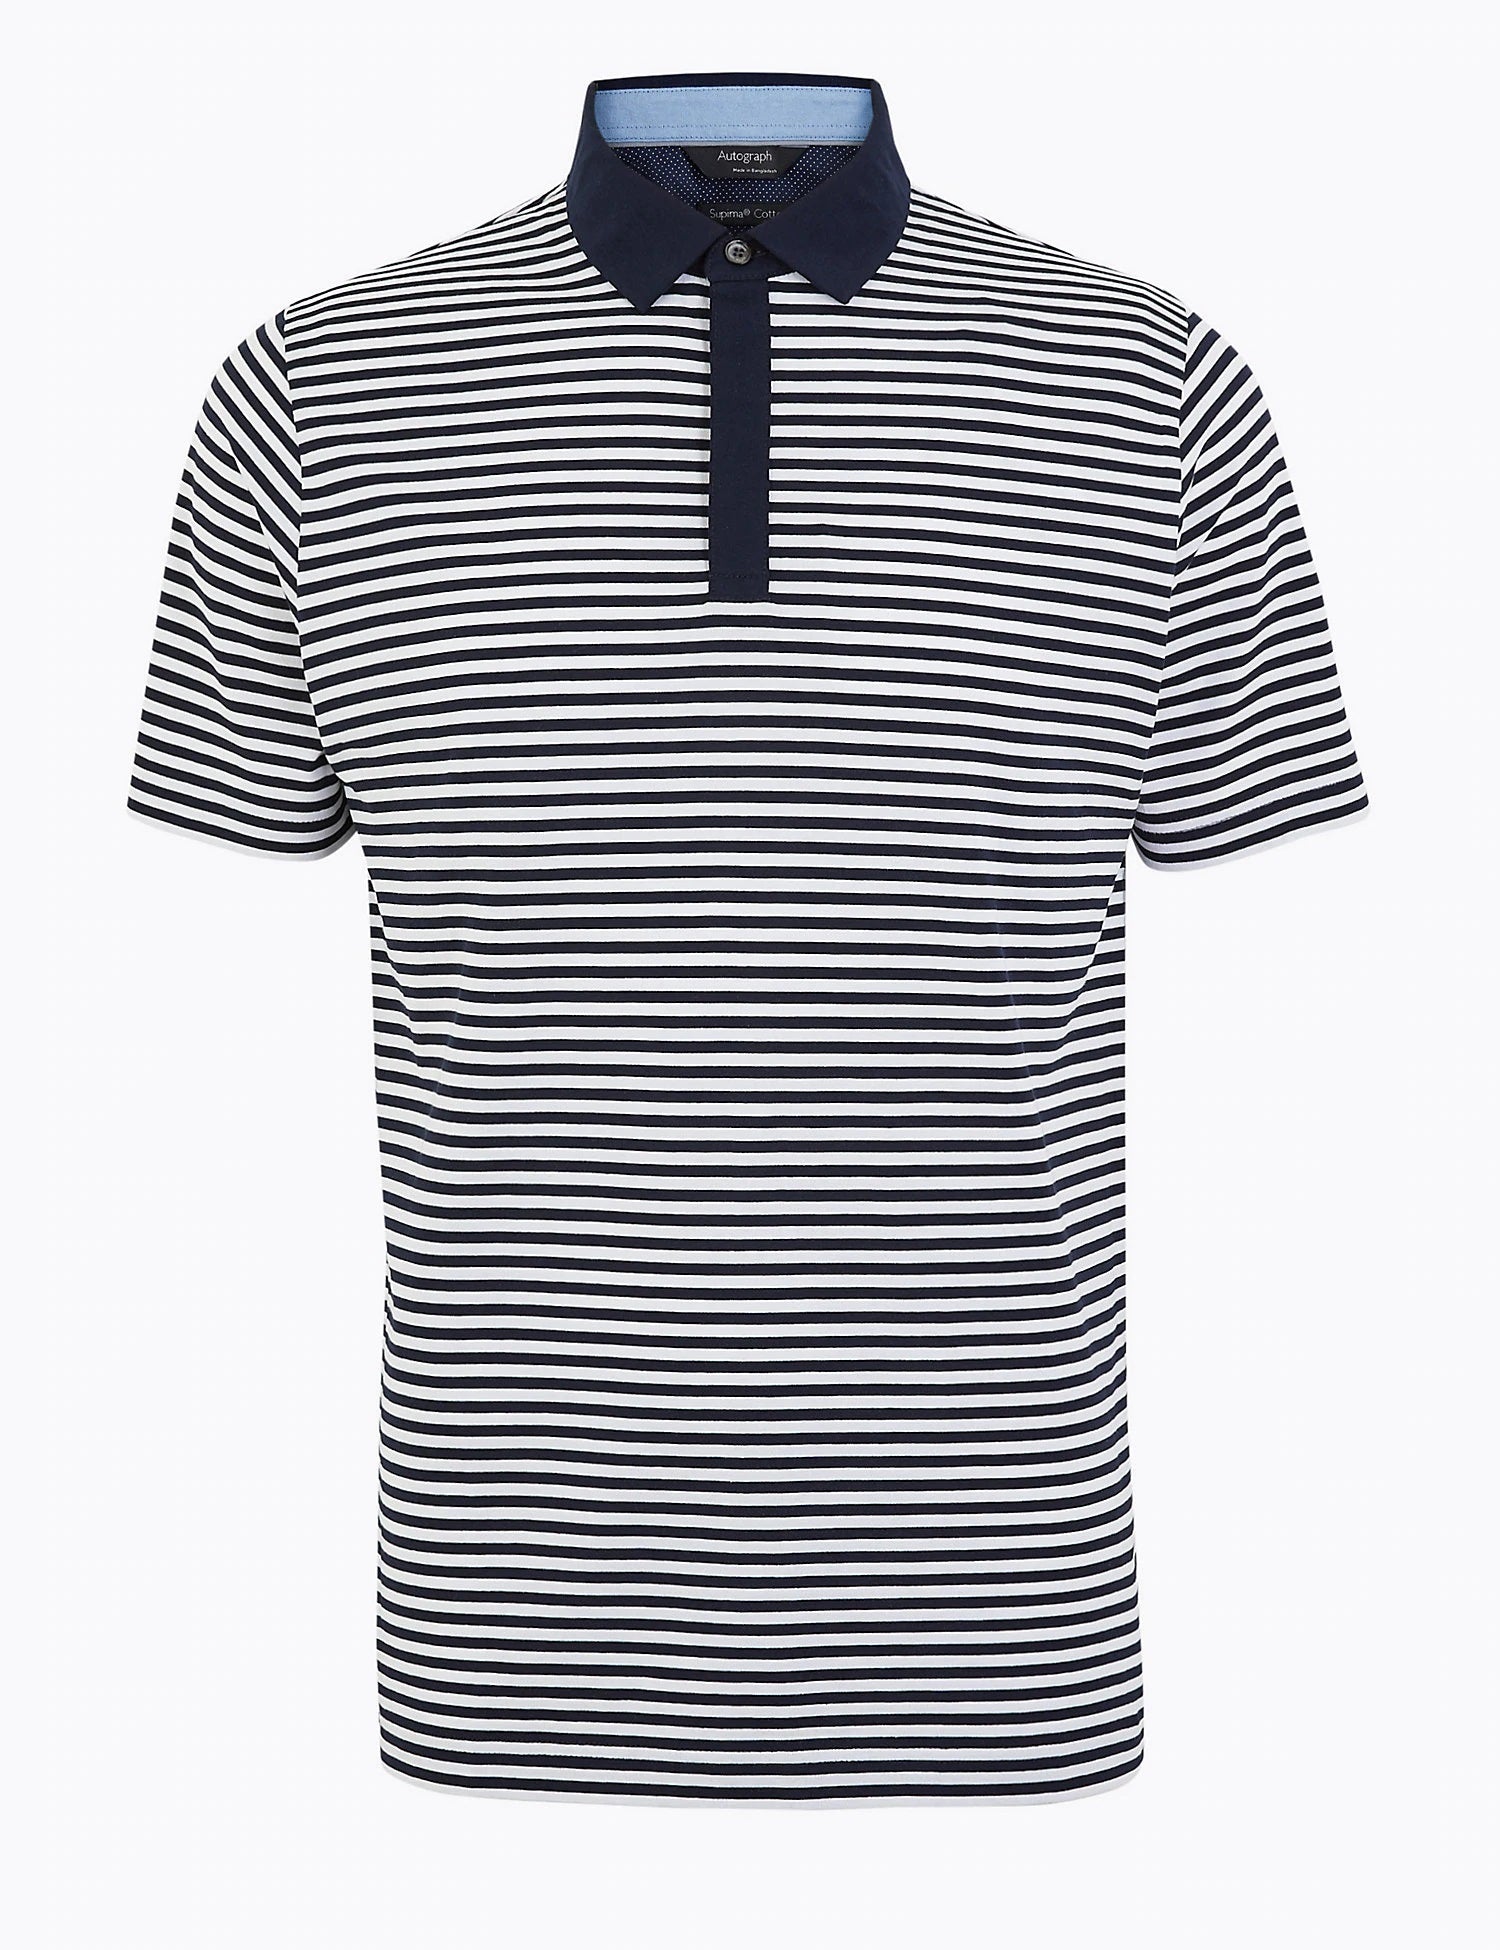 Premium Cotton Striped Polo Shirt